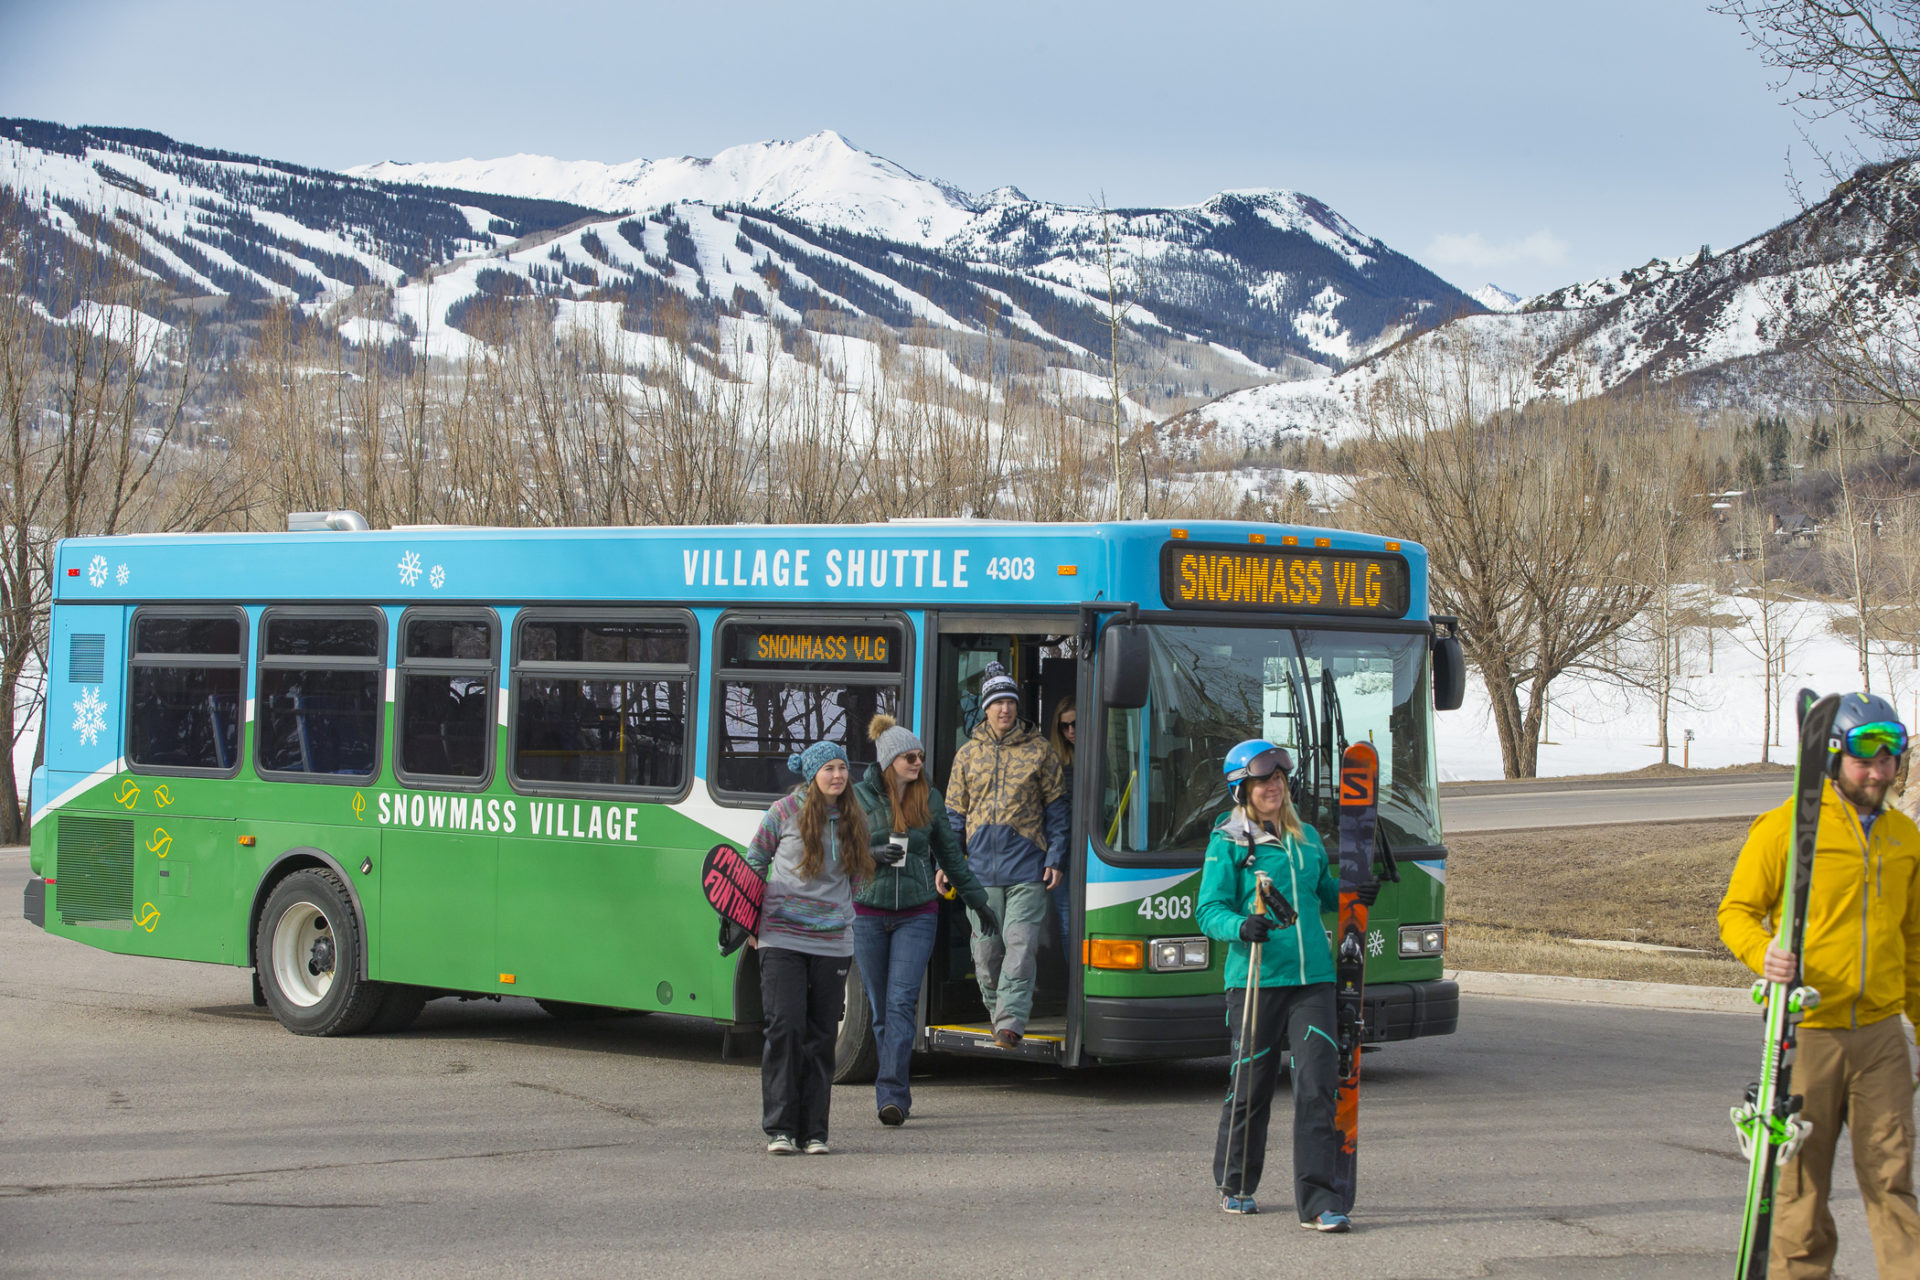 Public Transportation, Limos, Vans, & Bus Services | Snowmass Village